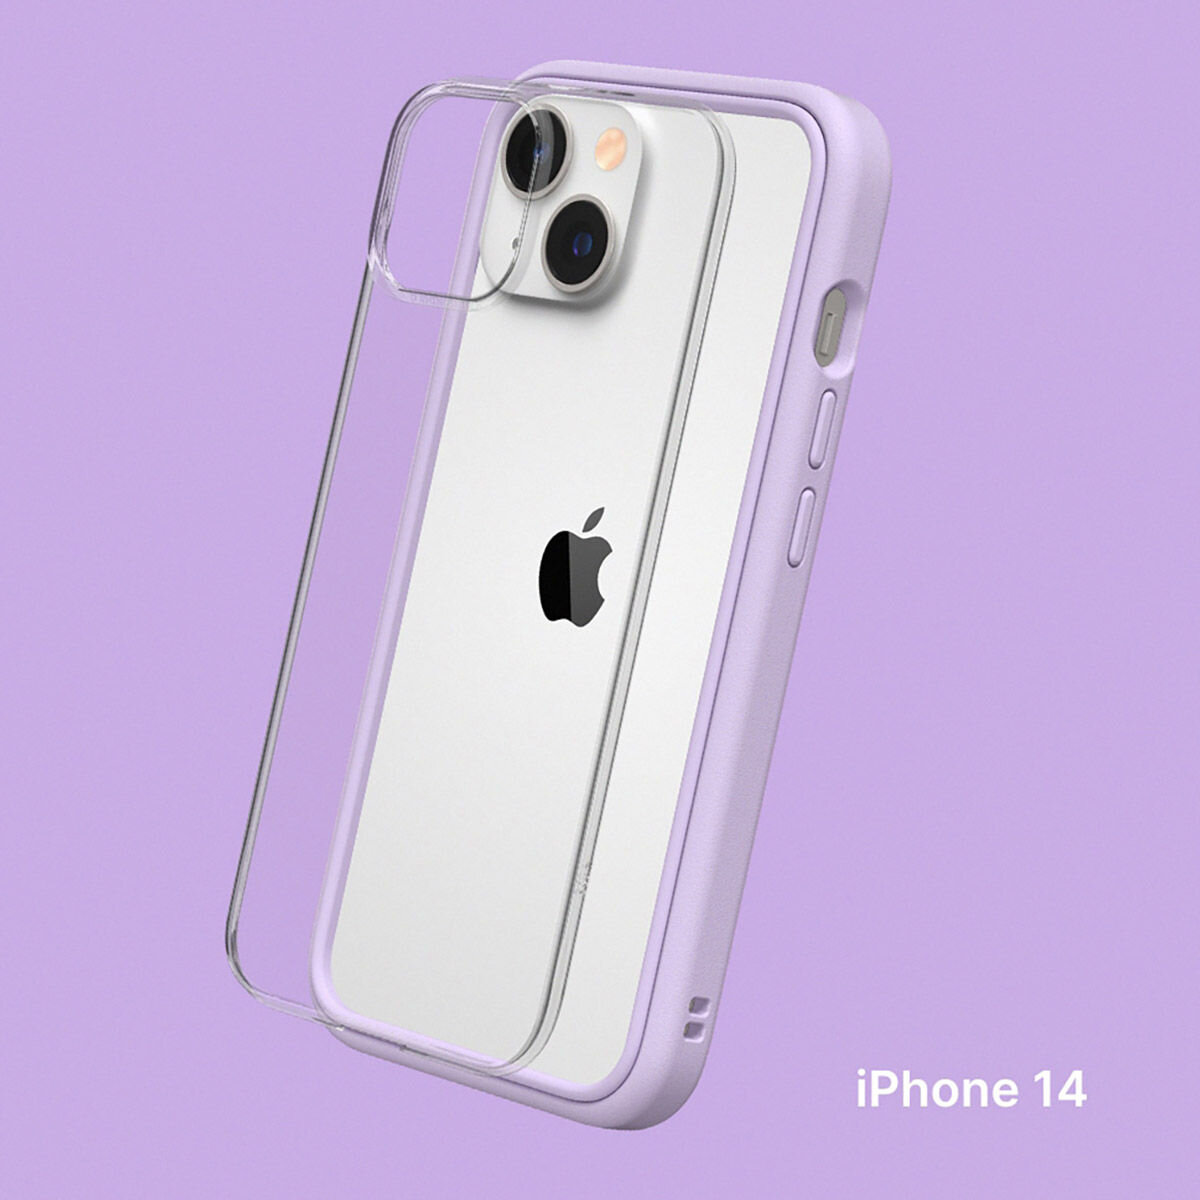 犀牛盾 iPhone 14 MOD NX 防摔手機殼 + 9H 3D滿版螢幕玻璃保護貼 紫羅蘭